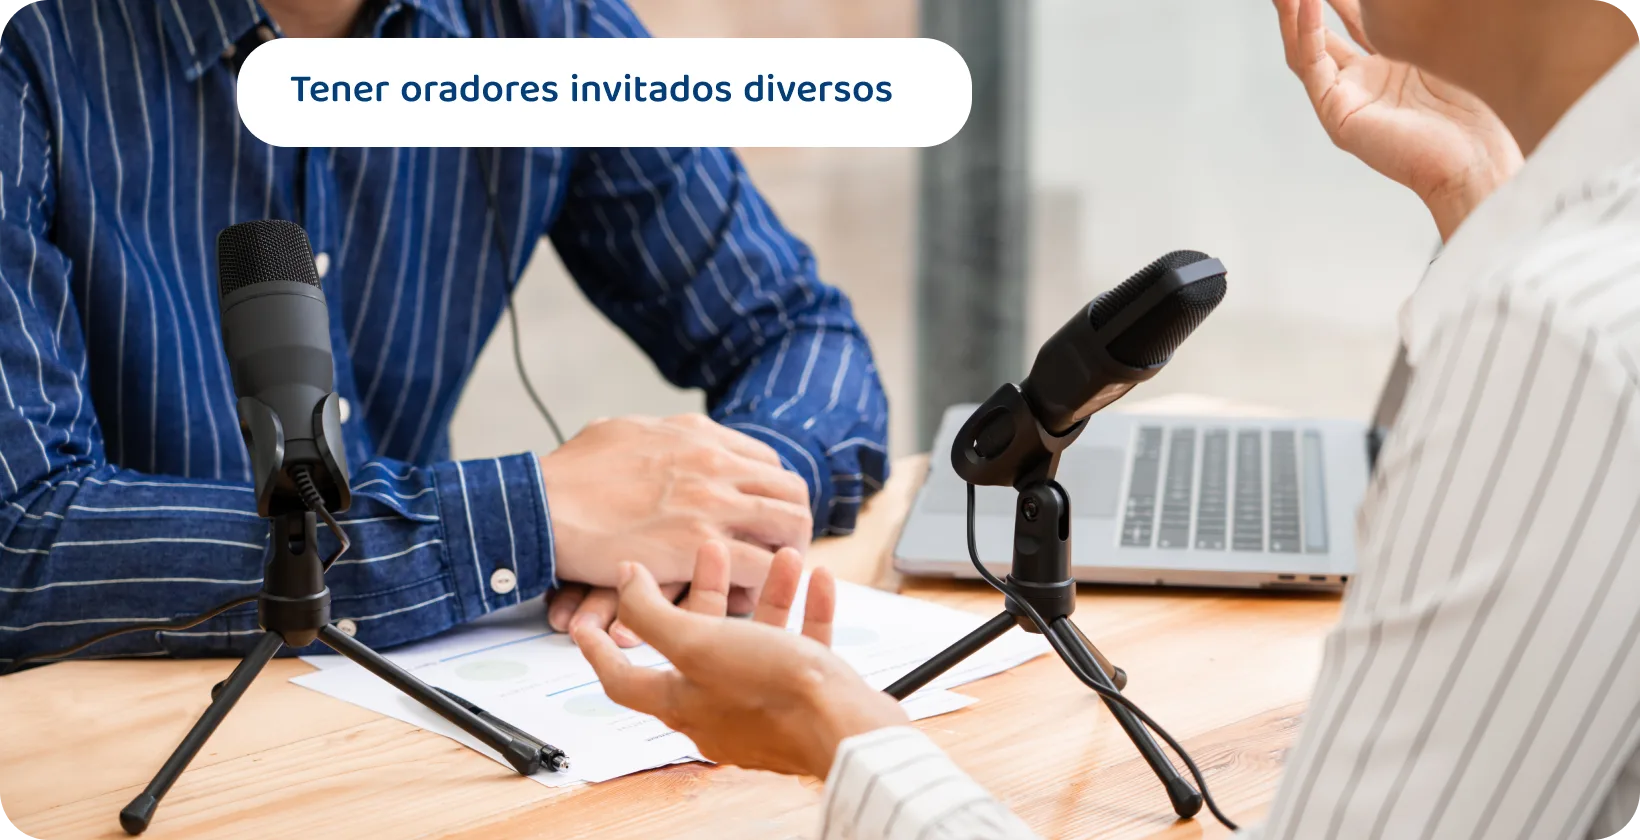 Dos podcasters con micrófonos discutiendo pueden ser los consejos de contenido para sesiones de oradores invitados atractivas y diversas.